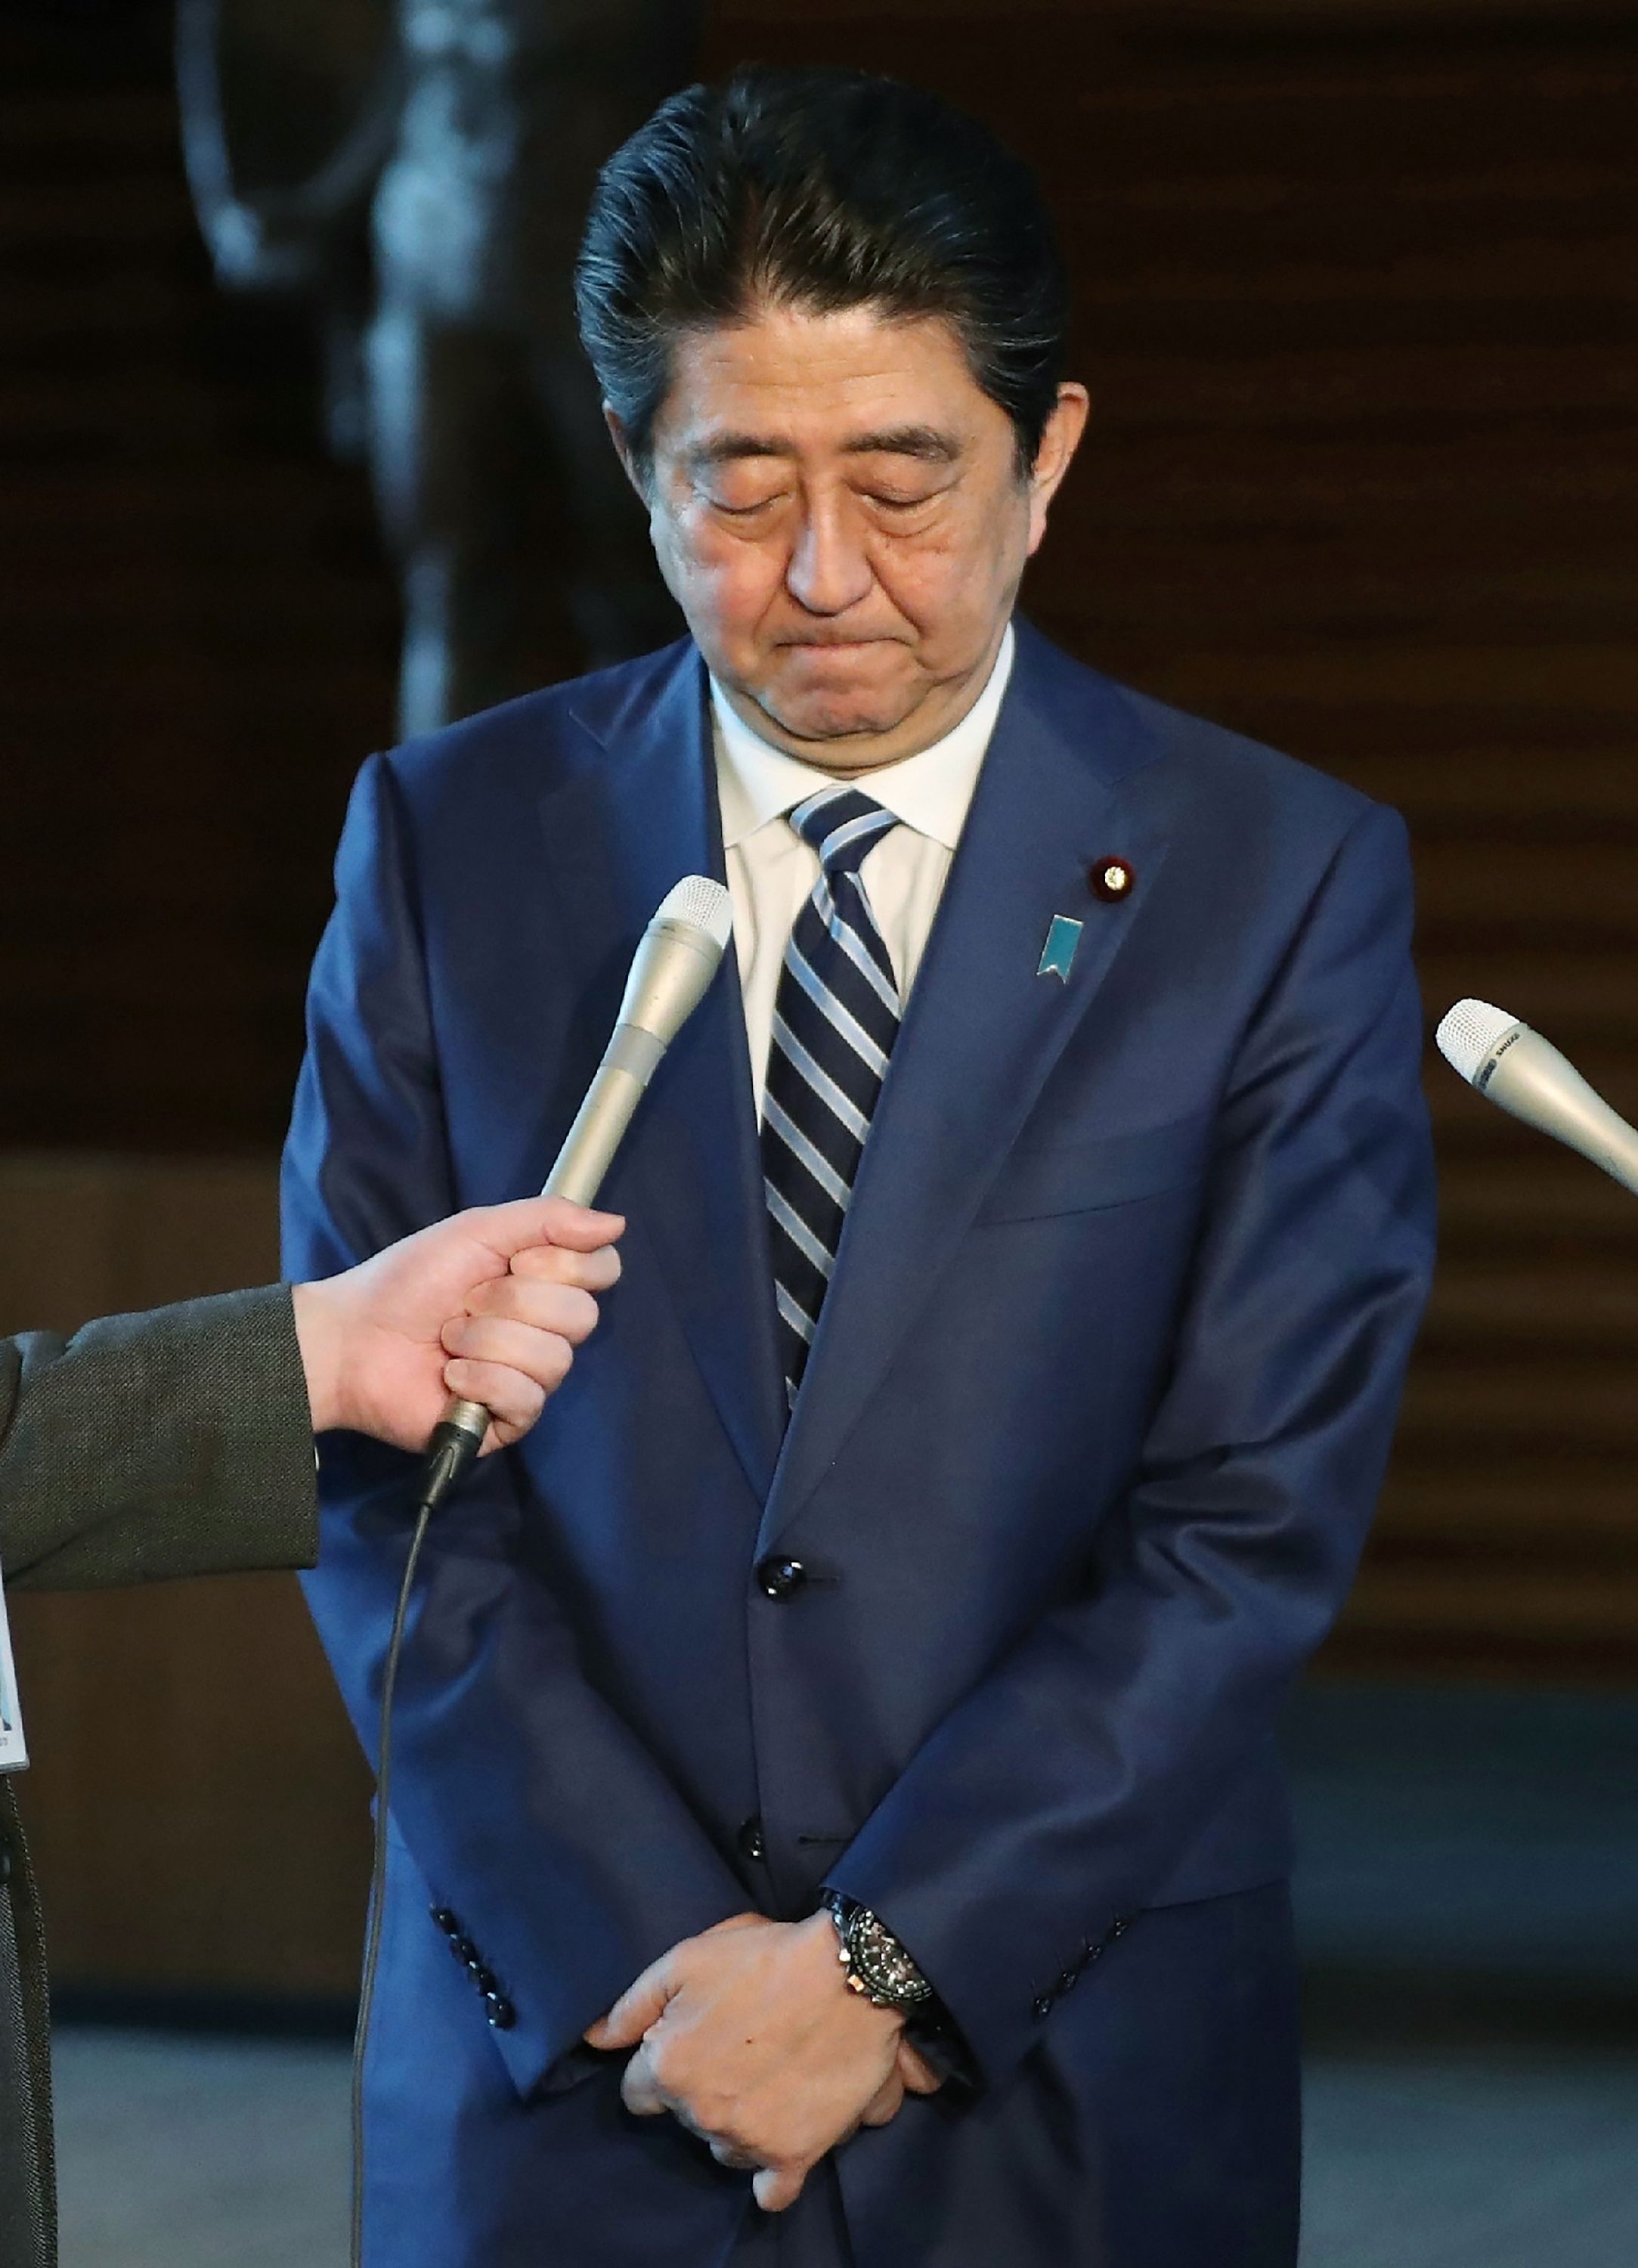 رئيس وزراء اليابان يعتذر بعد الخطأ لدى وزارة المالية